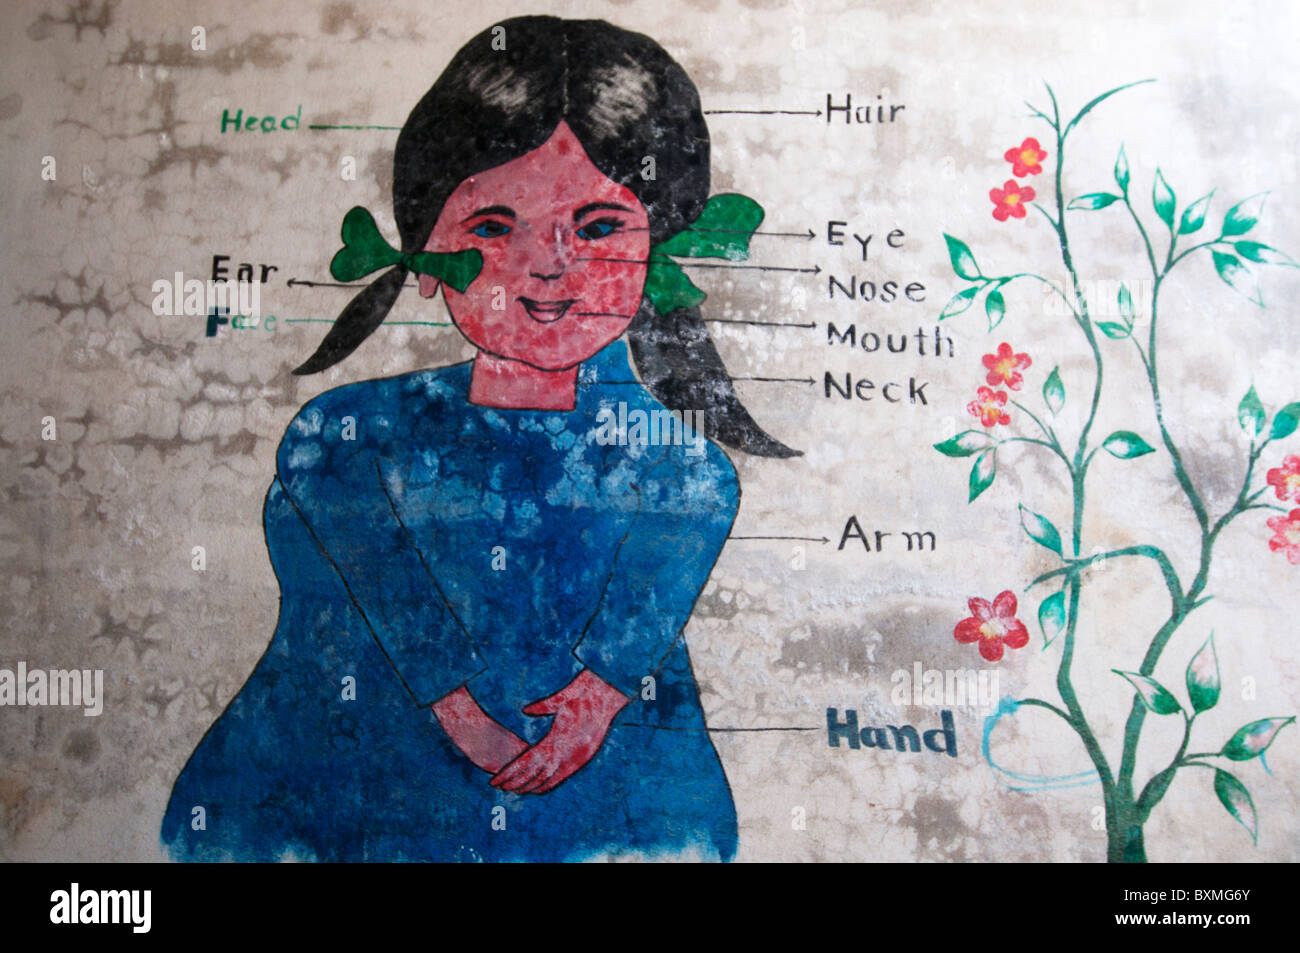 Pakistan. Al-Haq-öffentliche Schule. 230 Schüler, 9 Lehrer. Wandmalerei von Girl zeigt Teile des Körpers, Flut beschädigte. Stockfoto